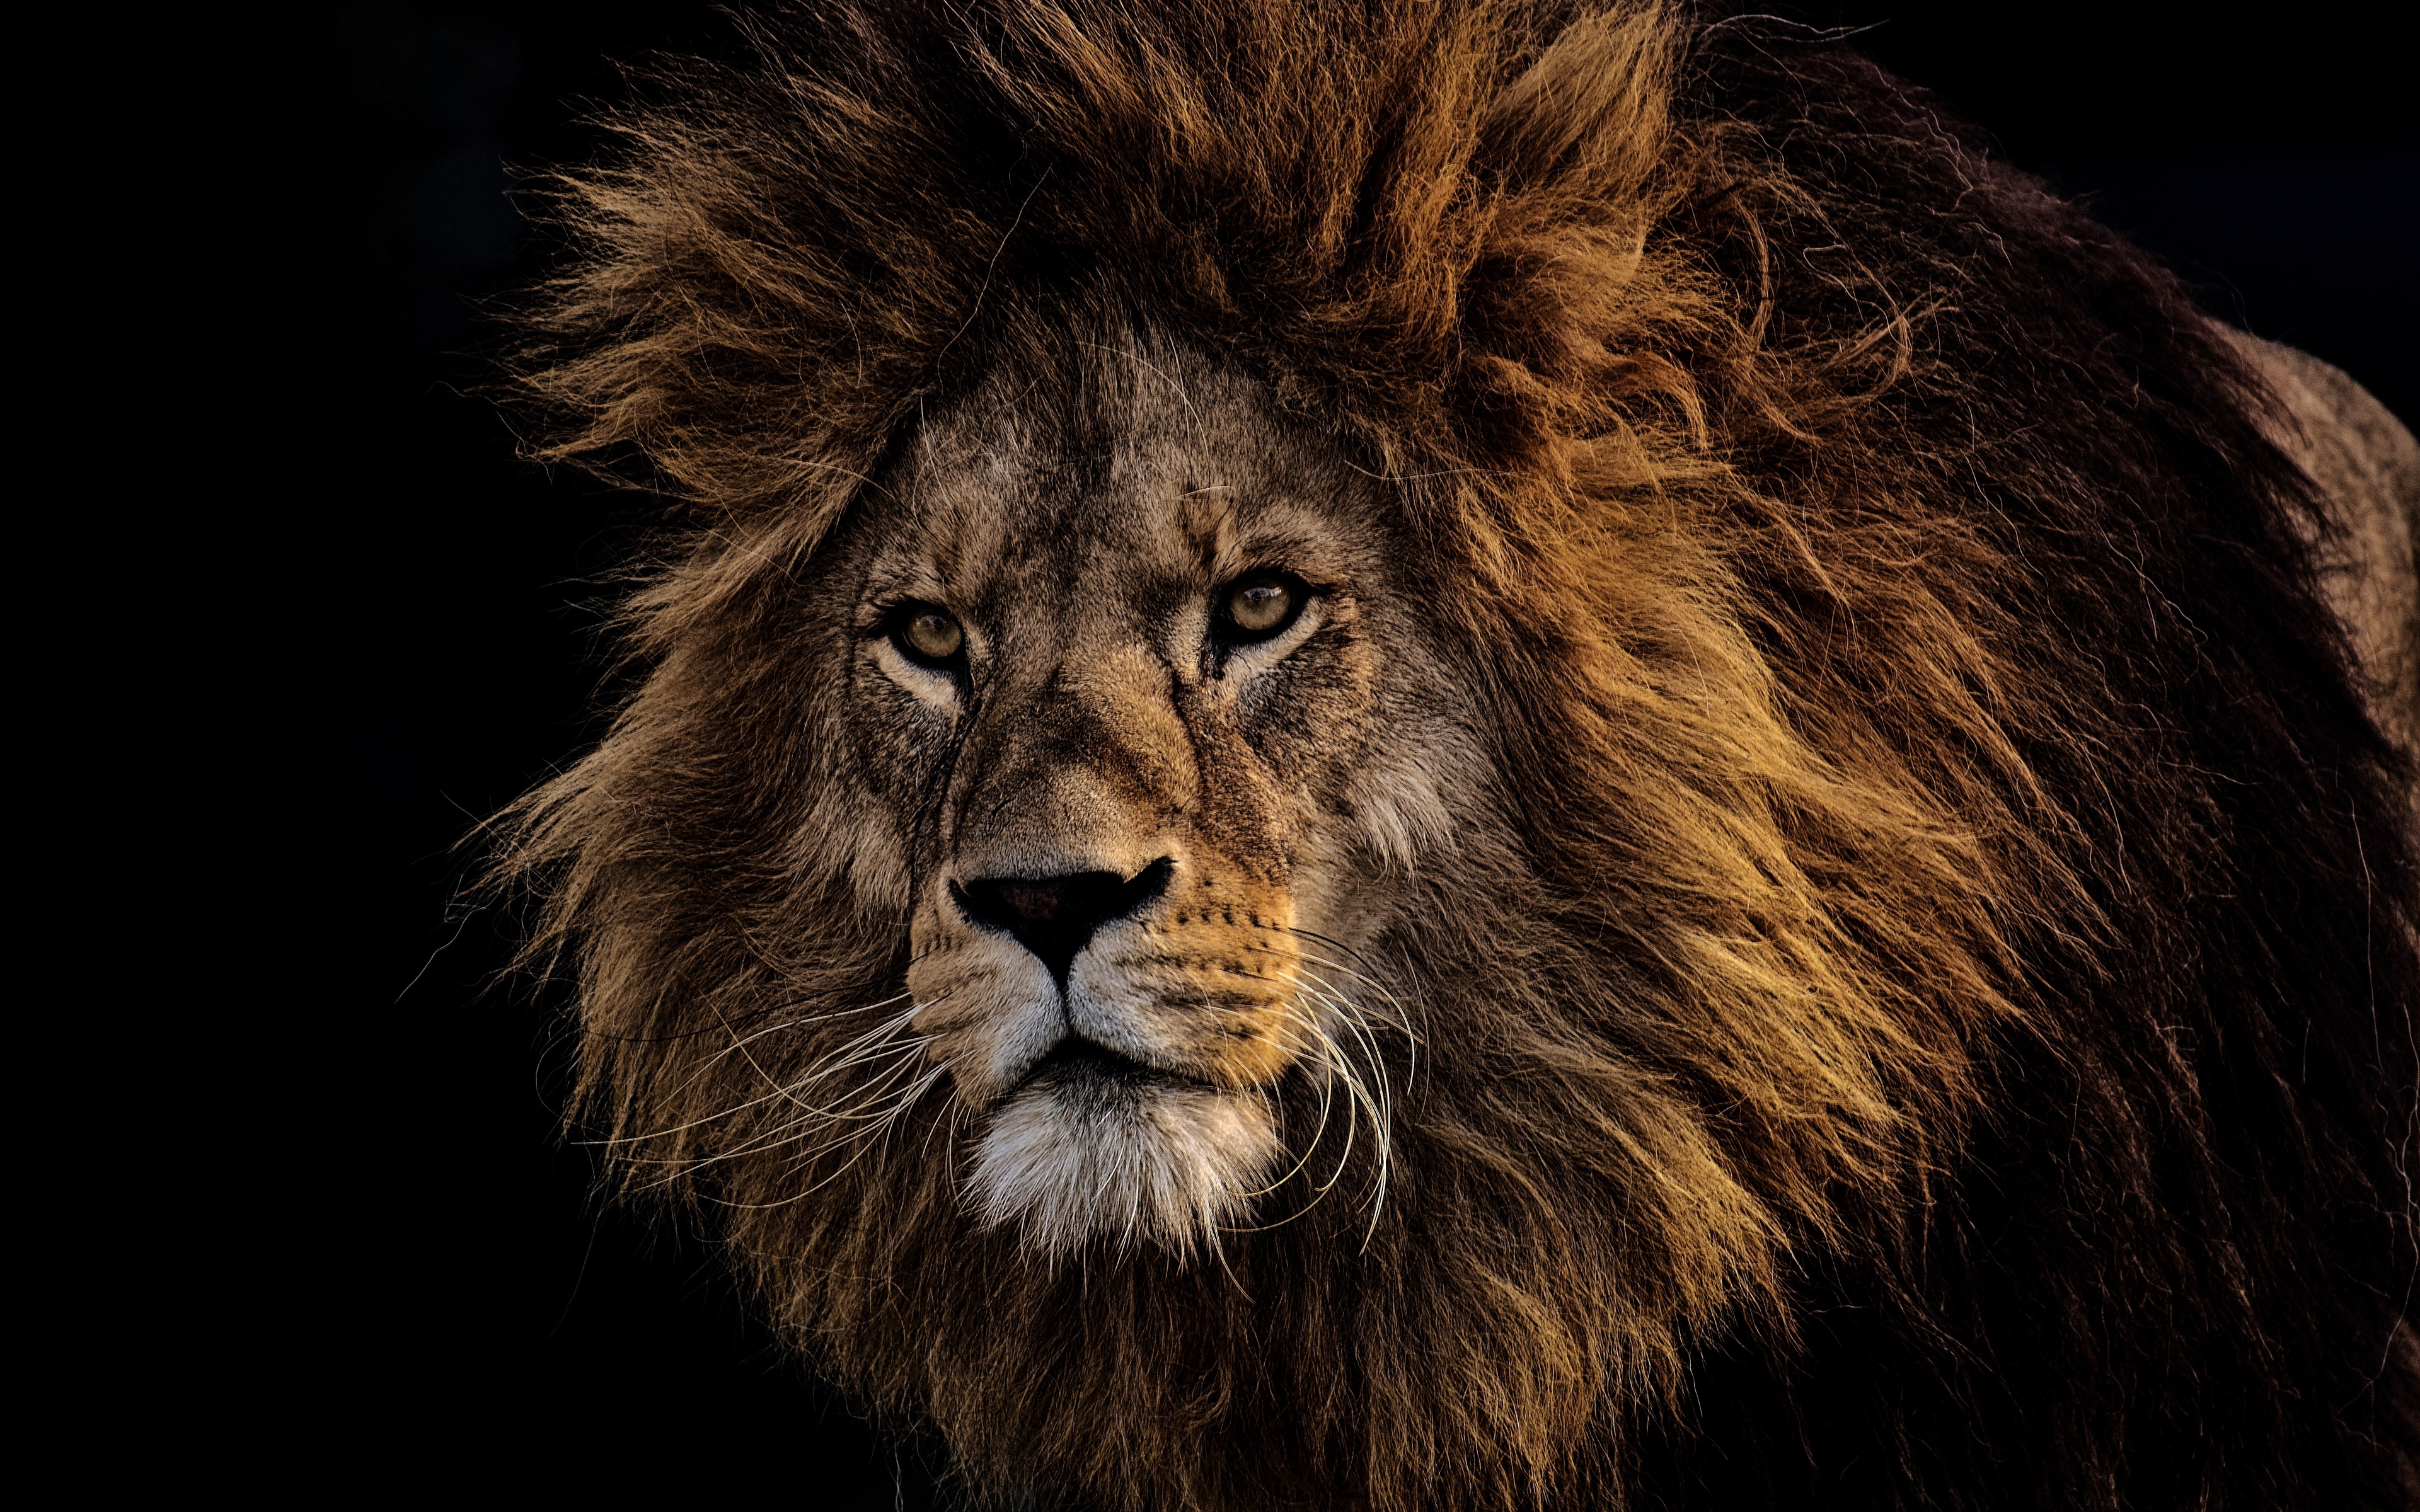 レオンのhd壁紙,ライオン,ヘア,野生動物,マサイライオン,ネコ科